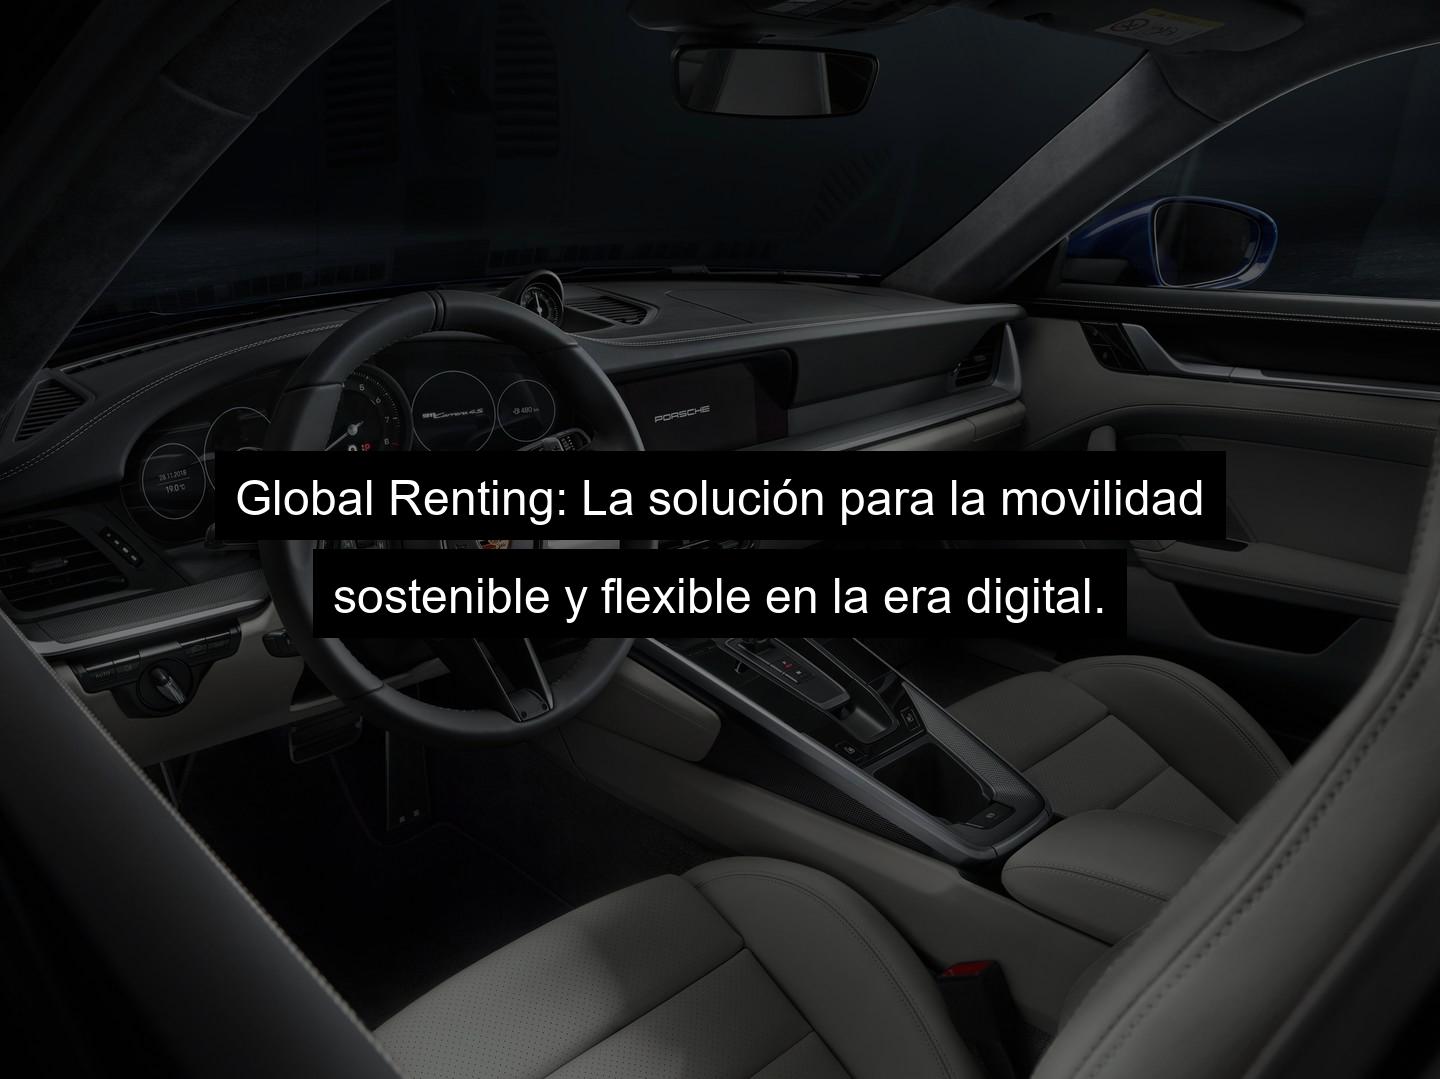 global renting destacada